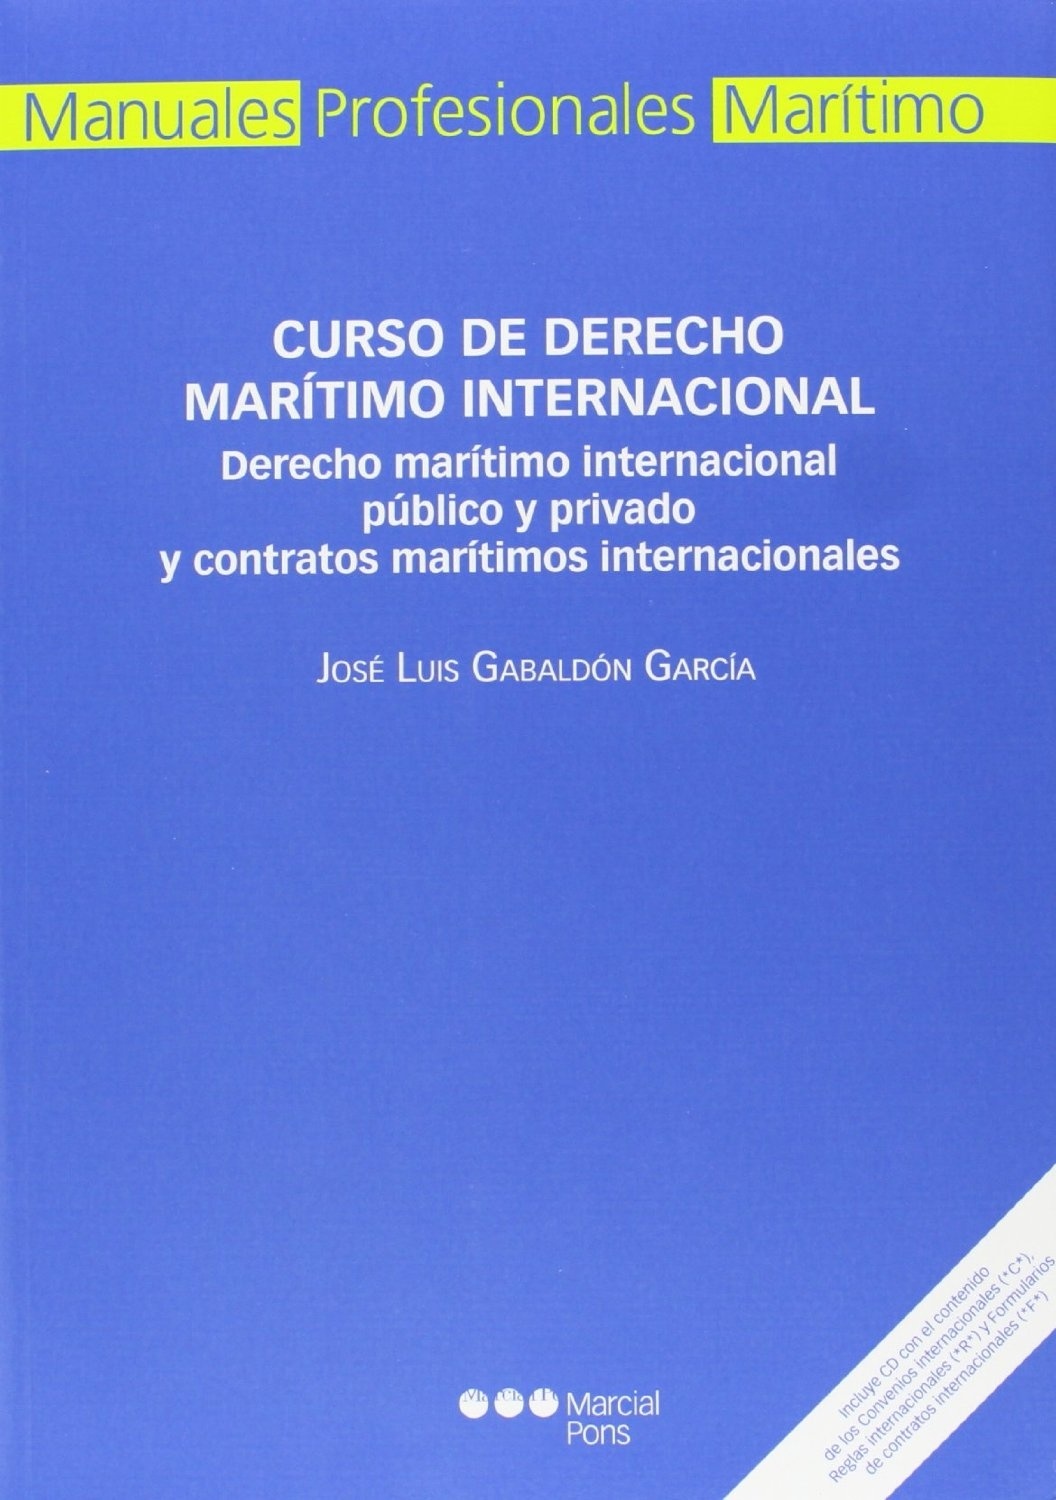 Curso de derecho marítimo internacional "Derecho marítimo internacional público y privado y contratos mar"